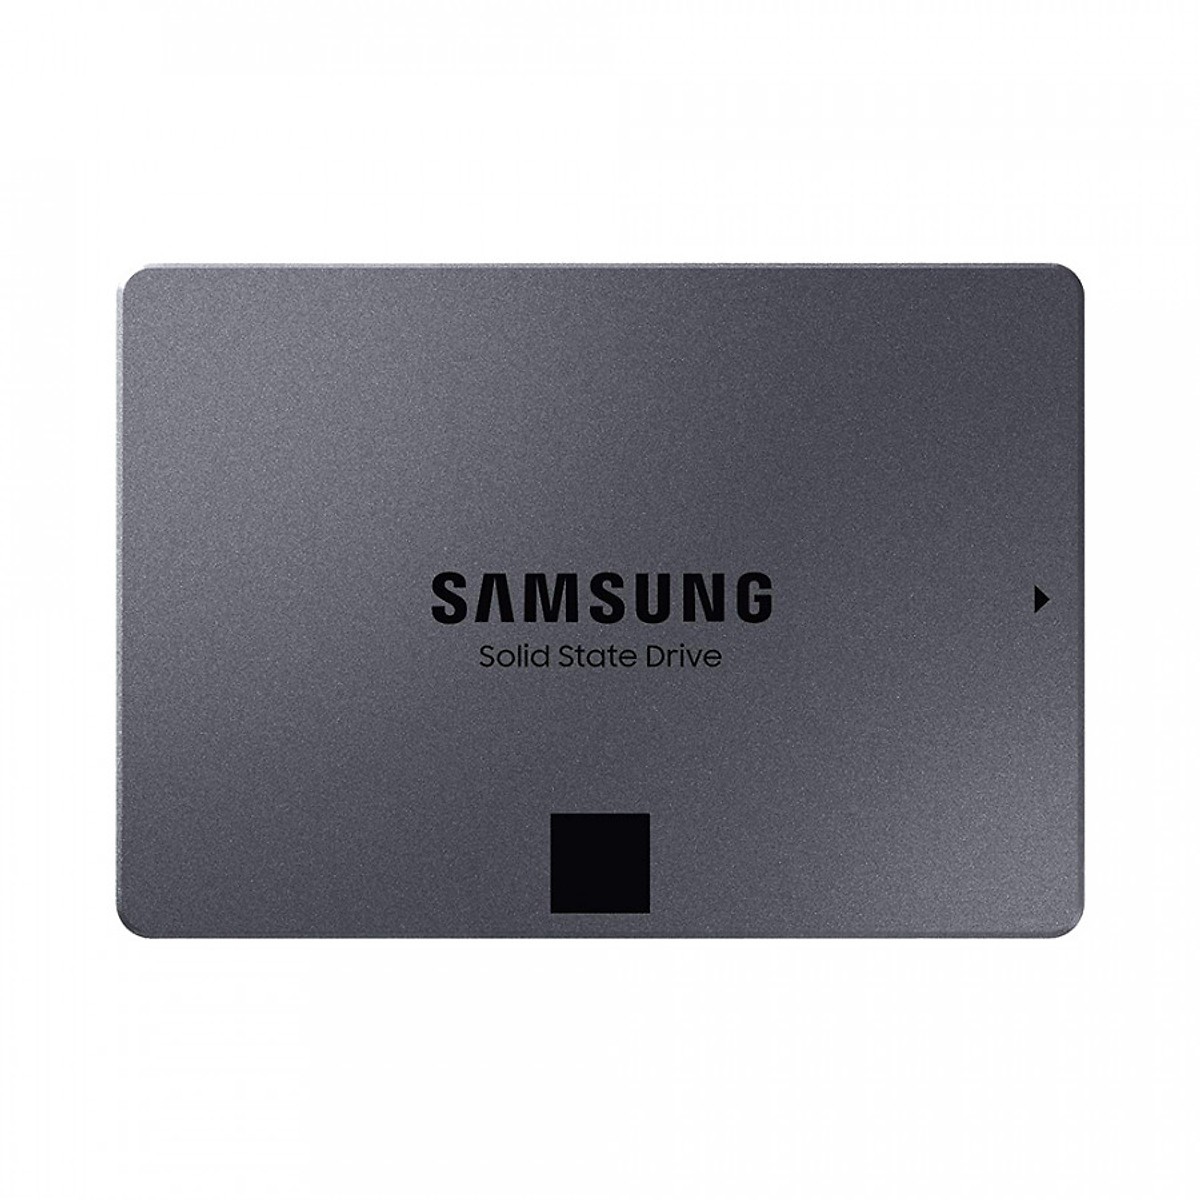 Ổ Cứng SSD Samsung 860 Qvo 4TB Sata III 2.5 inch - Hàng Nhập Khẩu